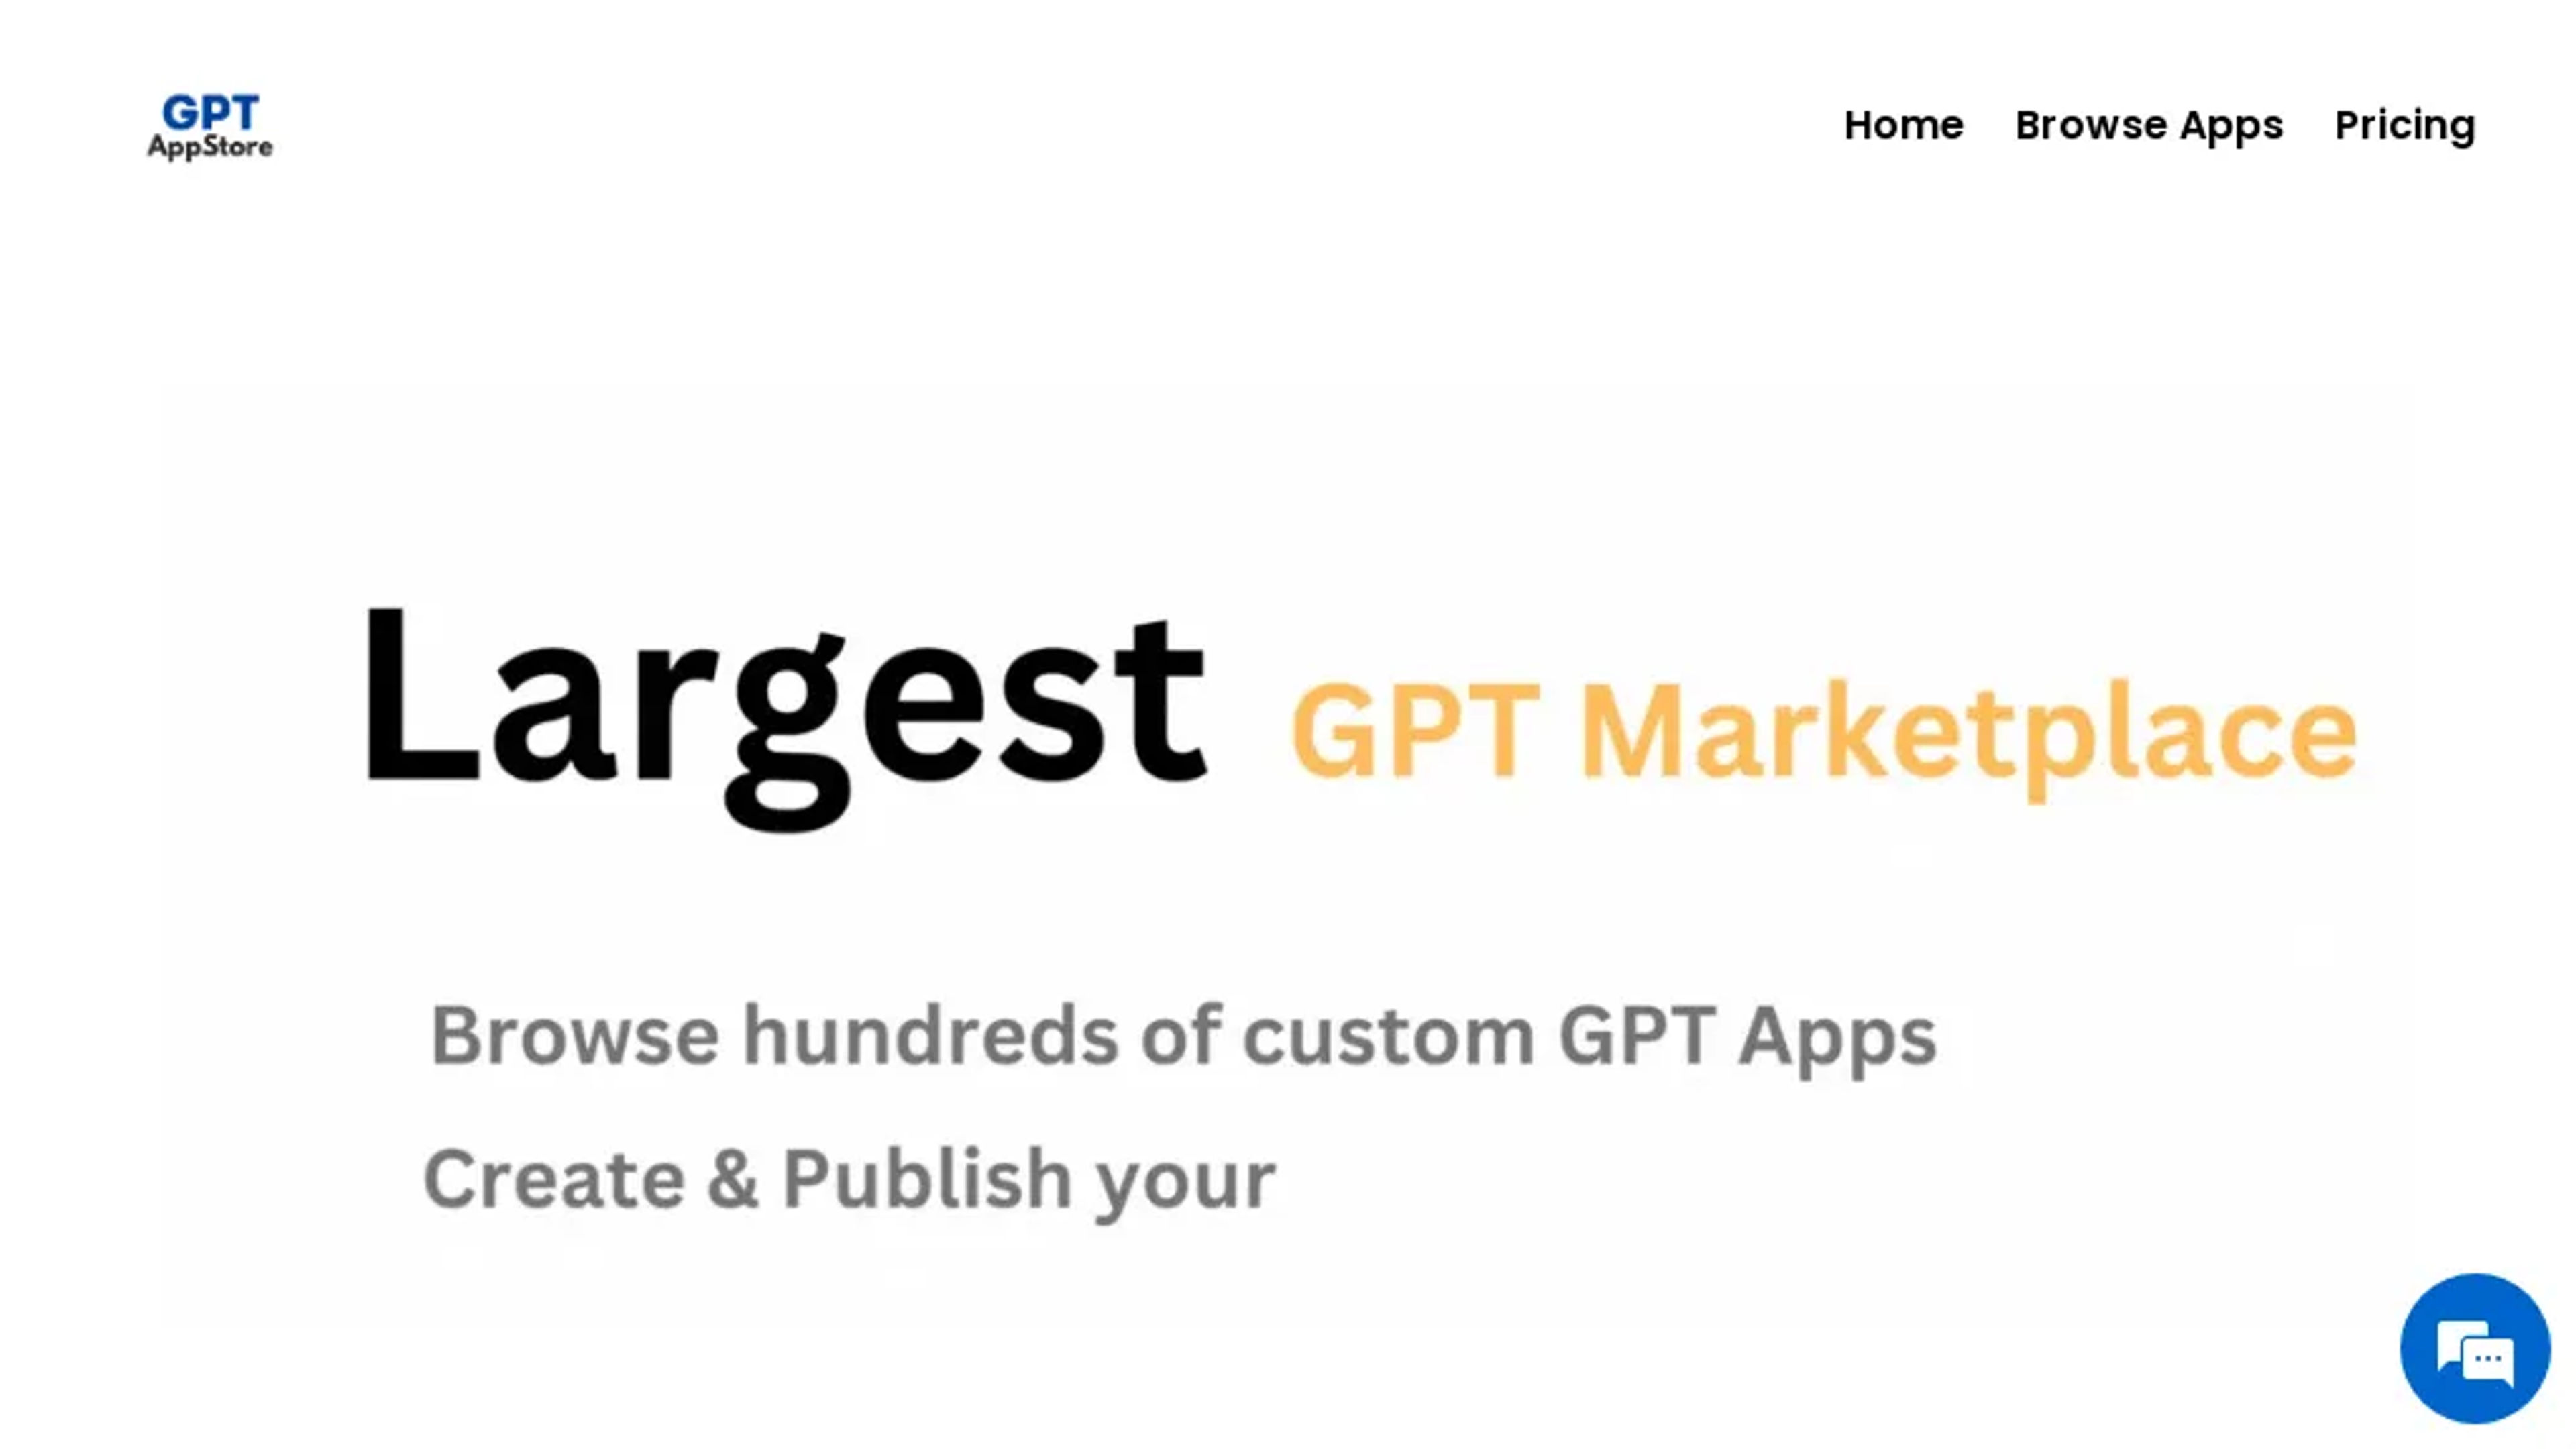 GPT Appstore